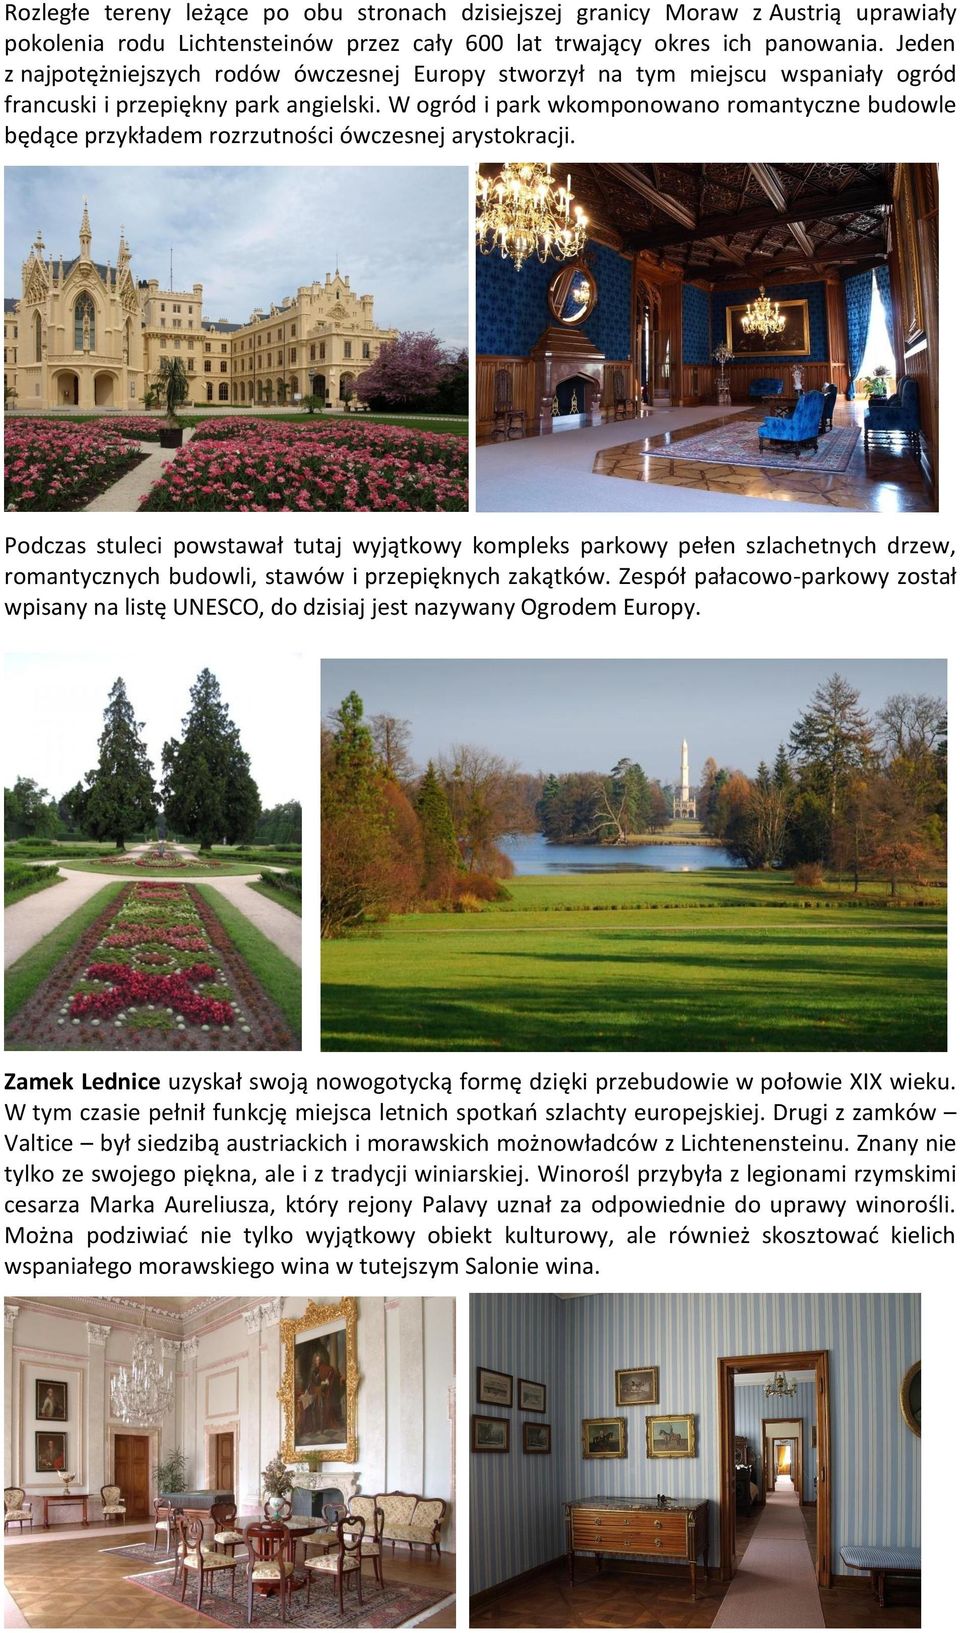 W ogród i park wkomponowano romantyczne budowle będące przykładem rozrzutności ówczesnej arystokracji.